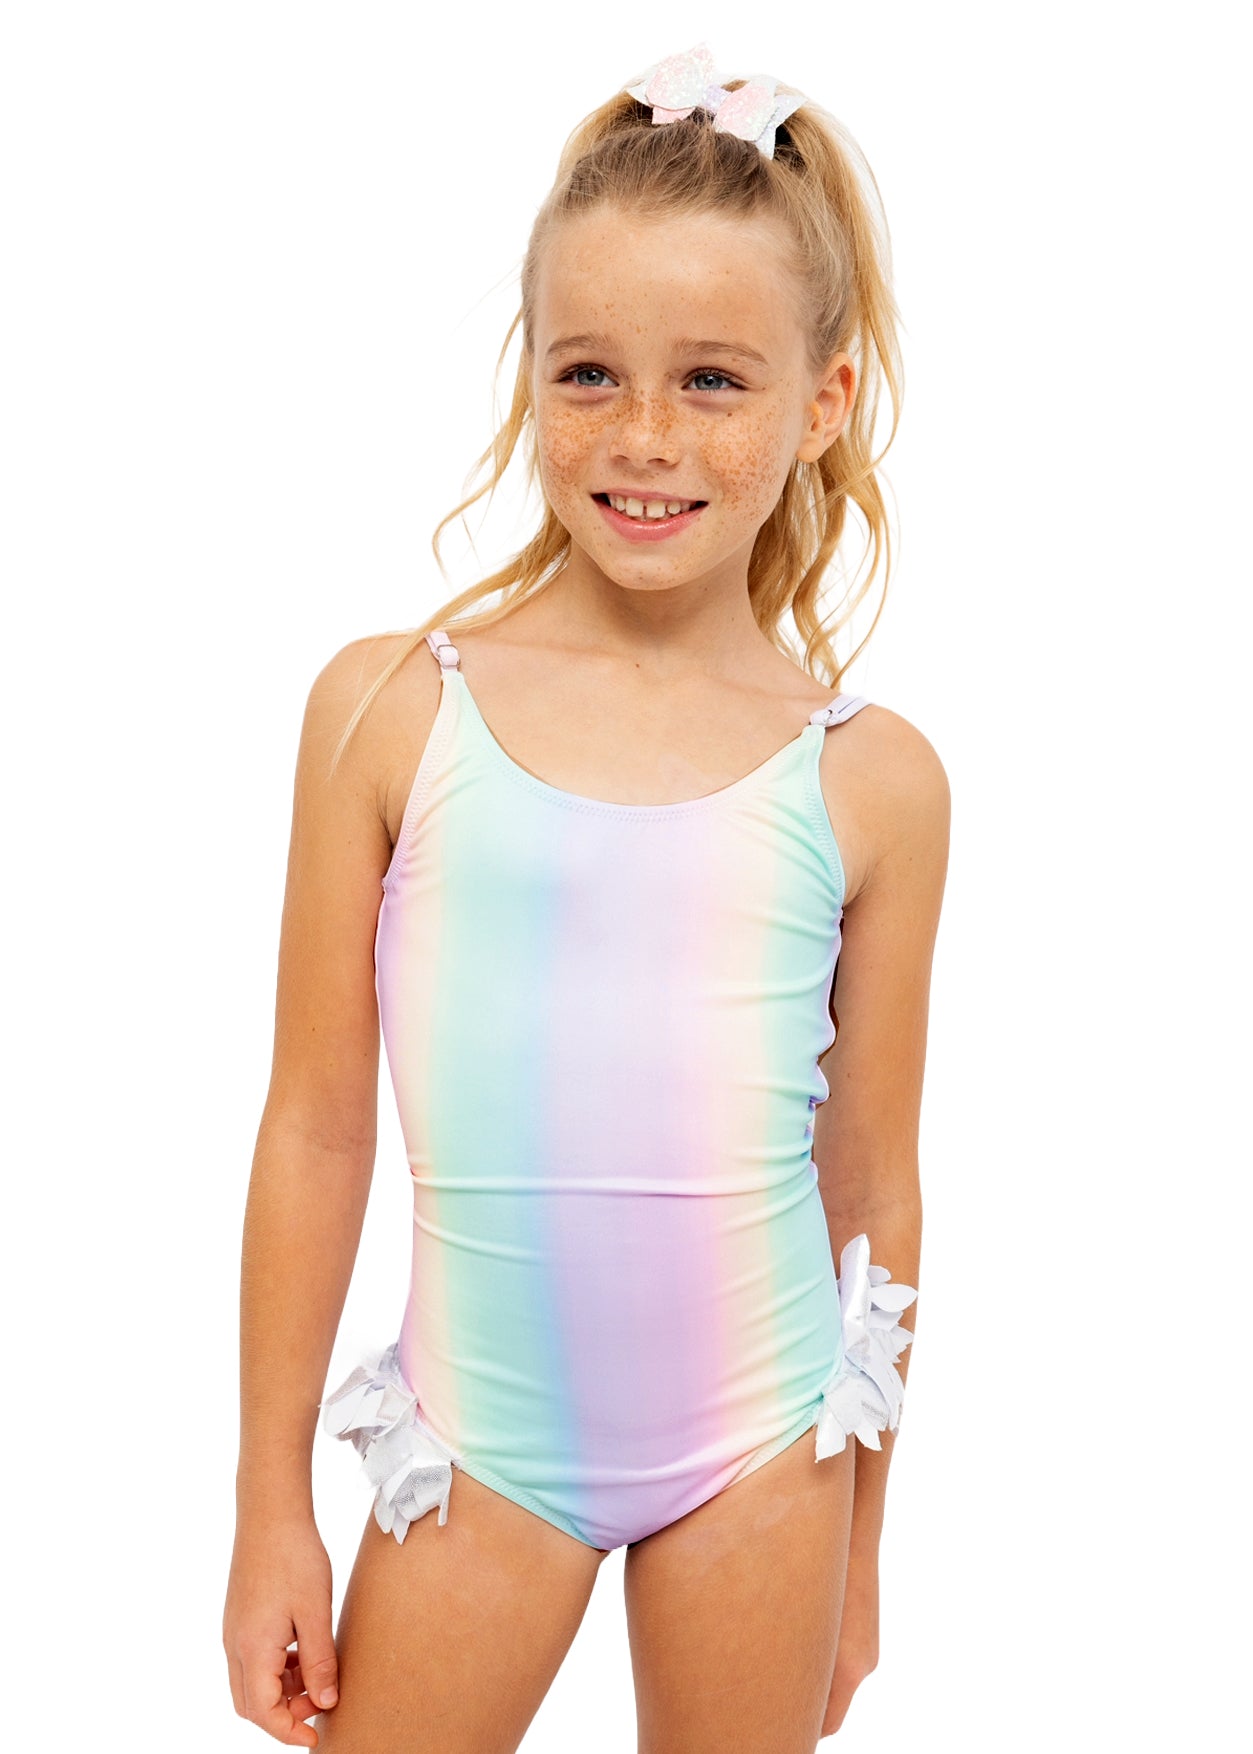 rainbow swimsuits for girls, rainbow swimwear for girls, rainbow bathing suit for girls